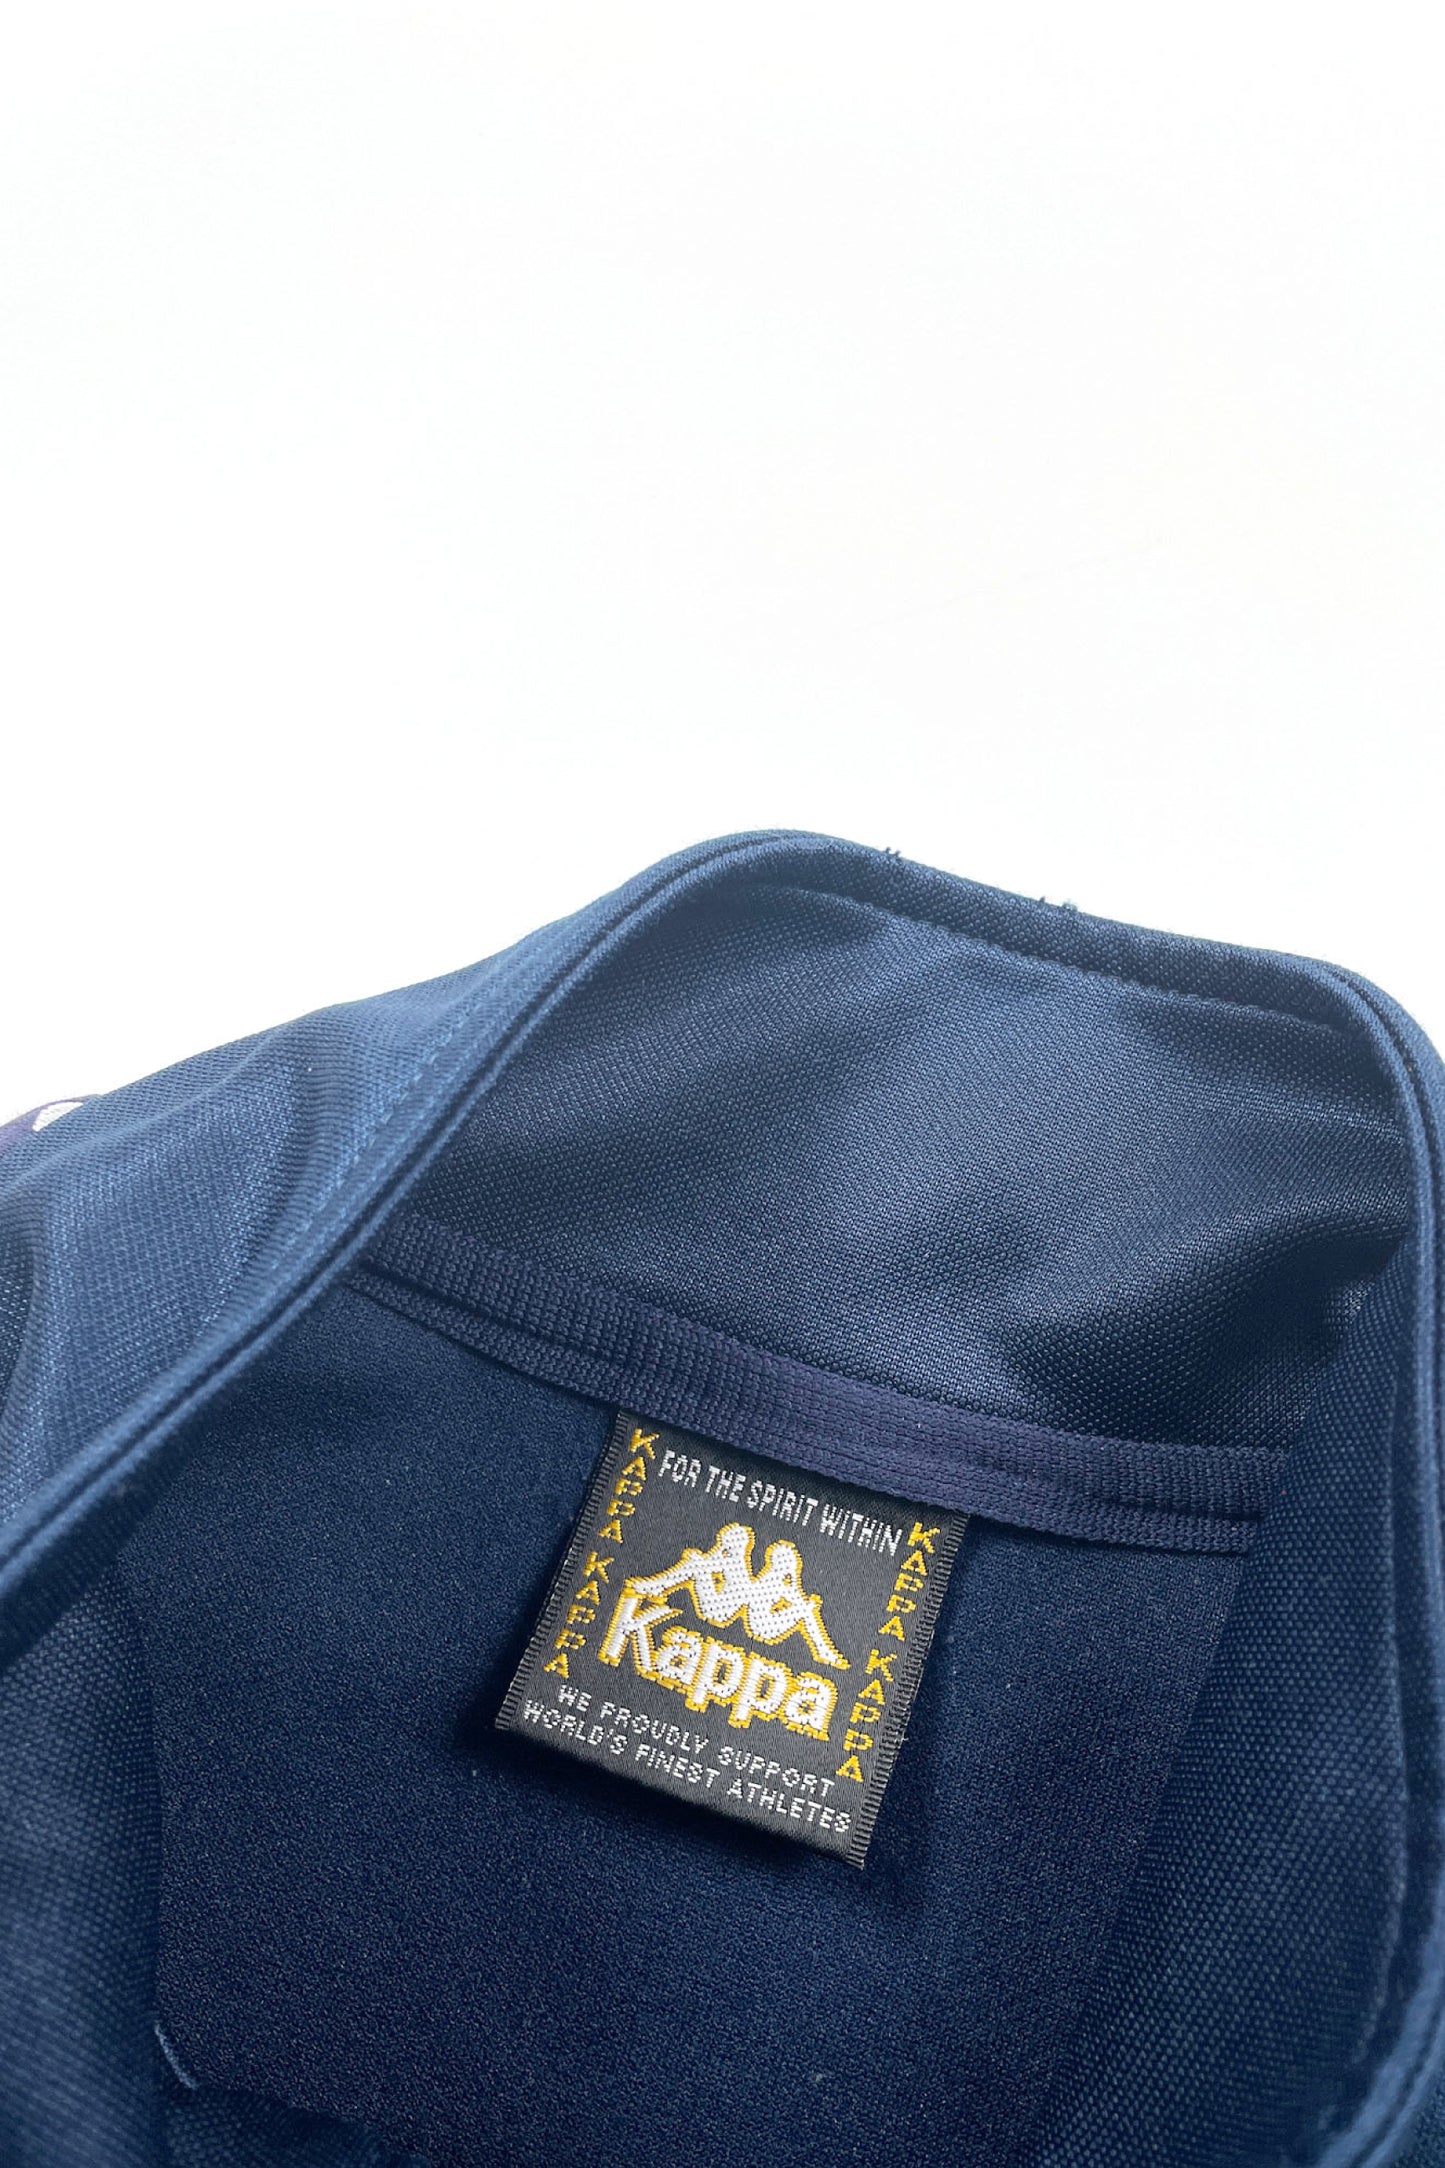 90's Kappa track jacket navy